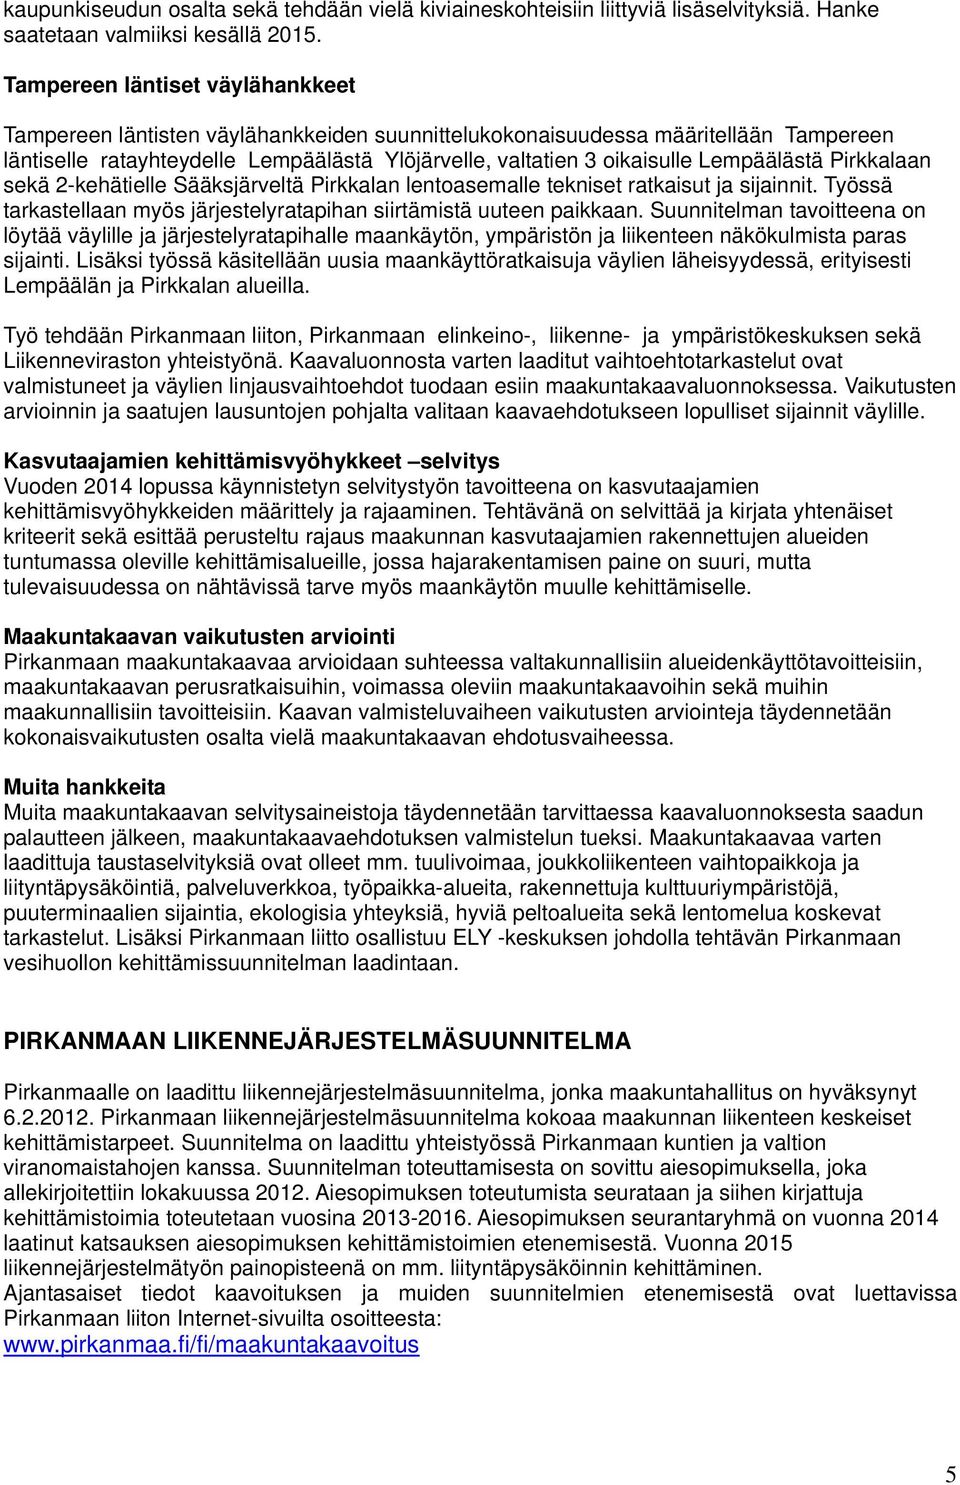 Lempäälästä Pirkkalaan sekä 2-kehätielle Sääksjärveltä Pirkkalan lentoasemalle tekniset ratkaisut ja sijainnit. Työssä tarkastellaan myös järjestelyratapihan siirtämistä uuteen paikkaan.